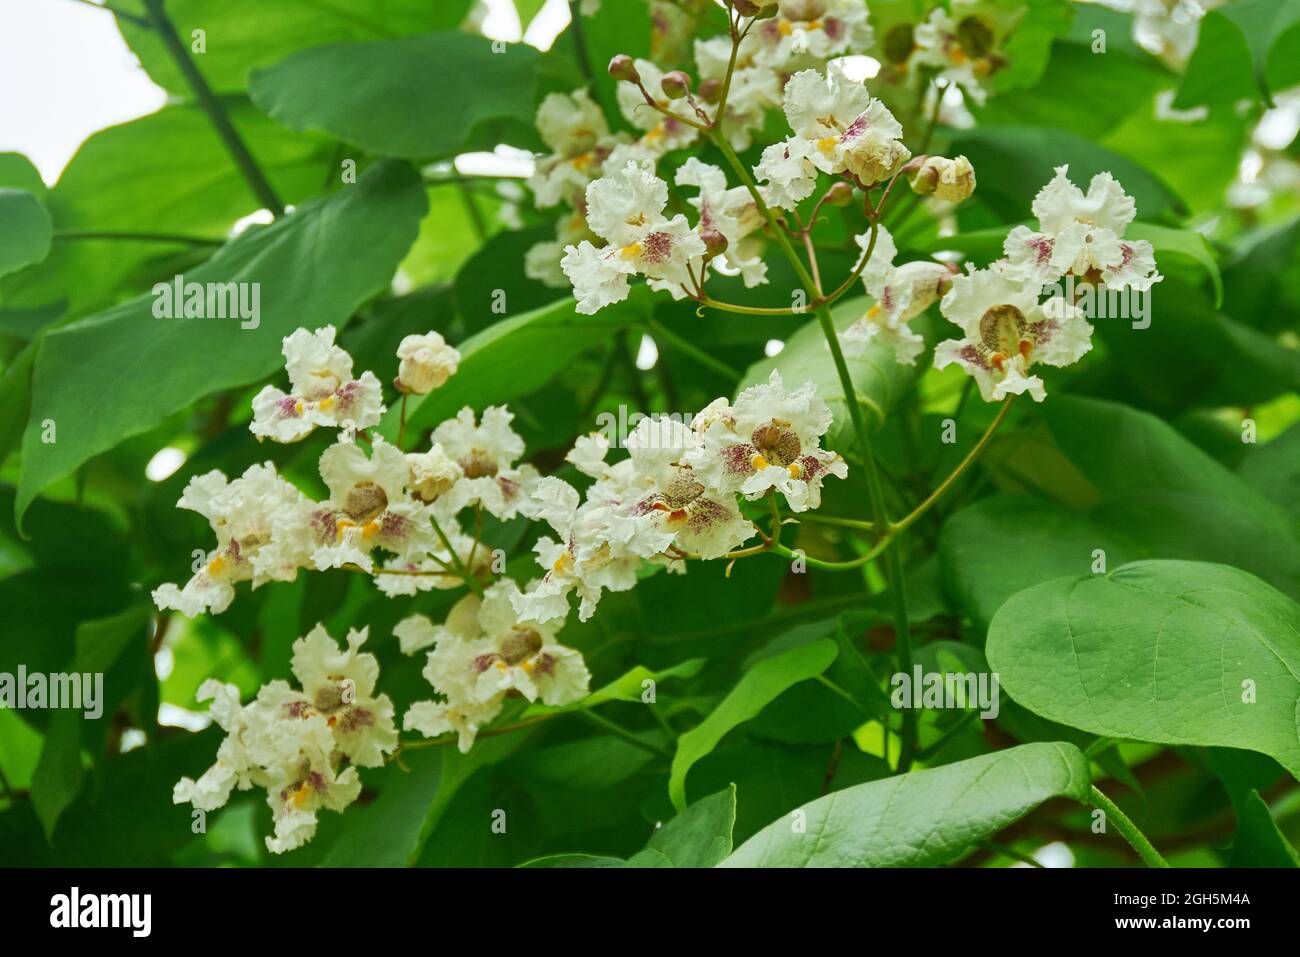 Catalpa disambiguation - Gattung der blühenden Pflanzen in der Familie Bignoniaceae Regionen von Nordamerika, der Karibik und Ostasien. Stockfoto